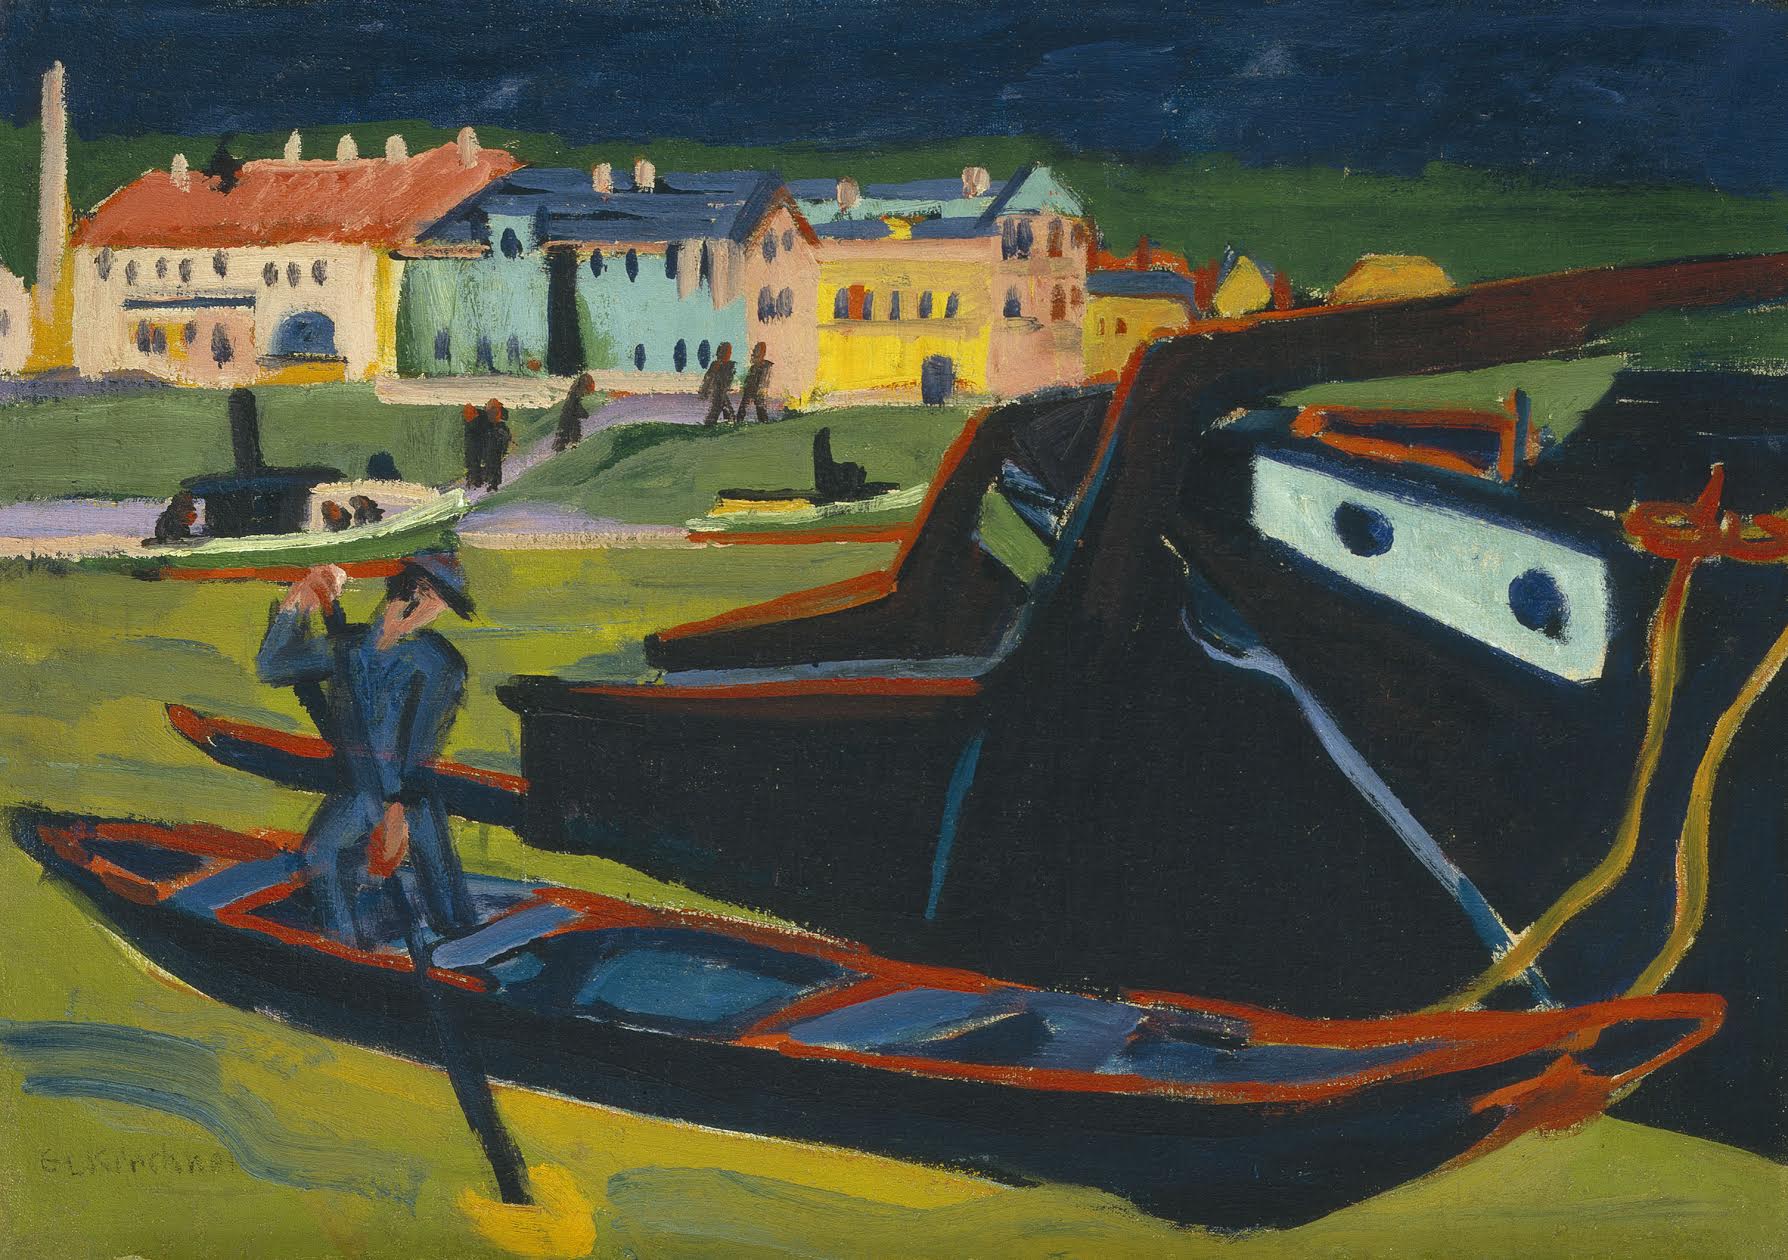 Botes en el Elbe cerca de Dresden by Ernst Ludwig Kirchner - 1910 (reworked 1920) Museo de Arte de la Universidad de Indiana